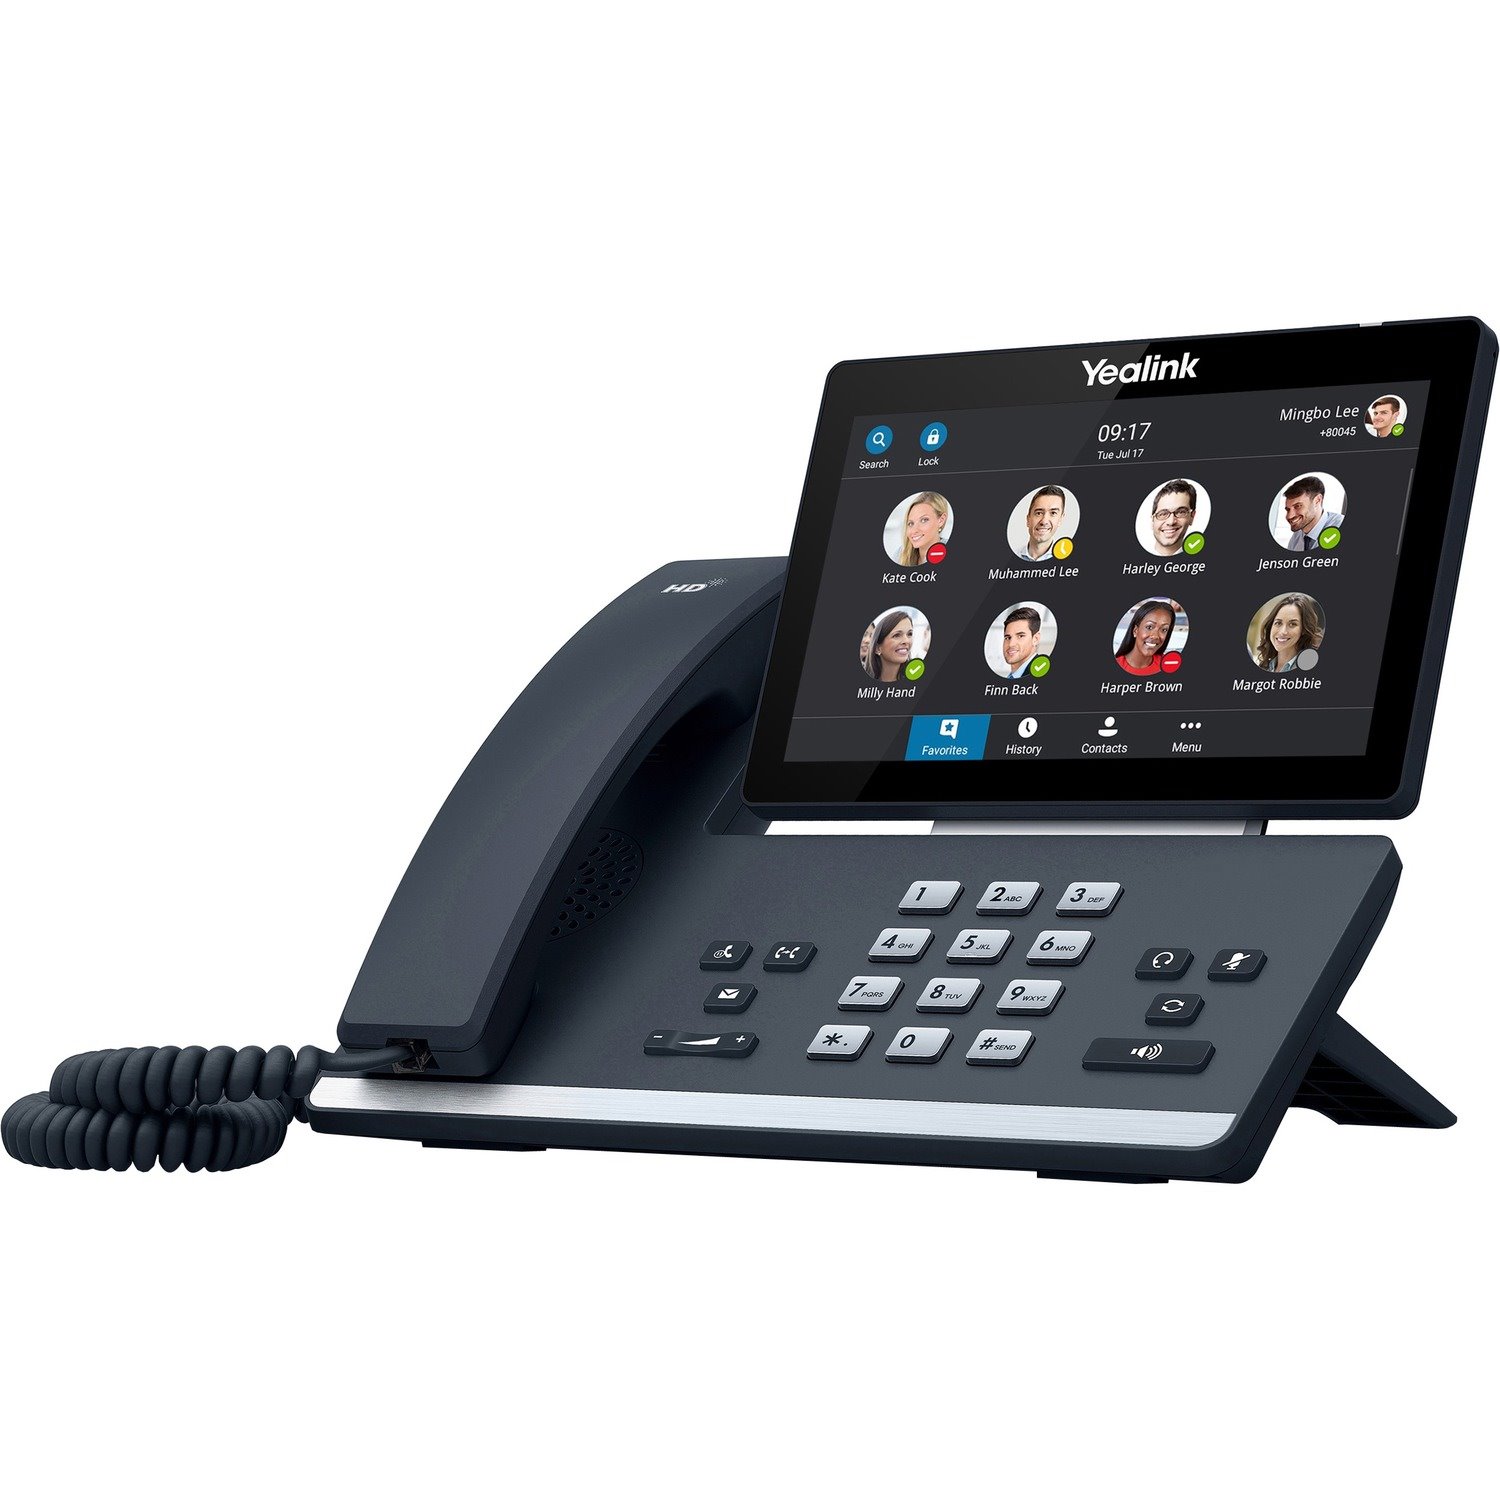 Yealink T58A IP Phone - Corded - Corded - Desktop